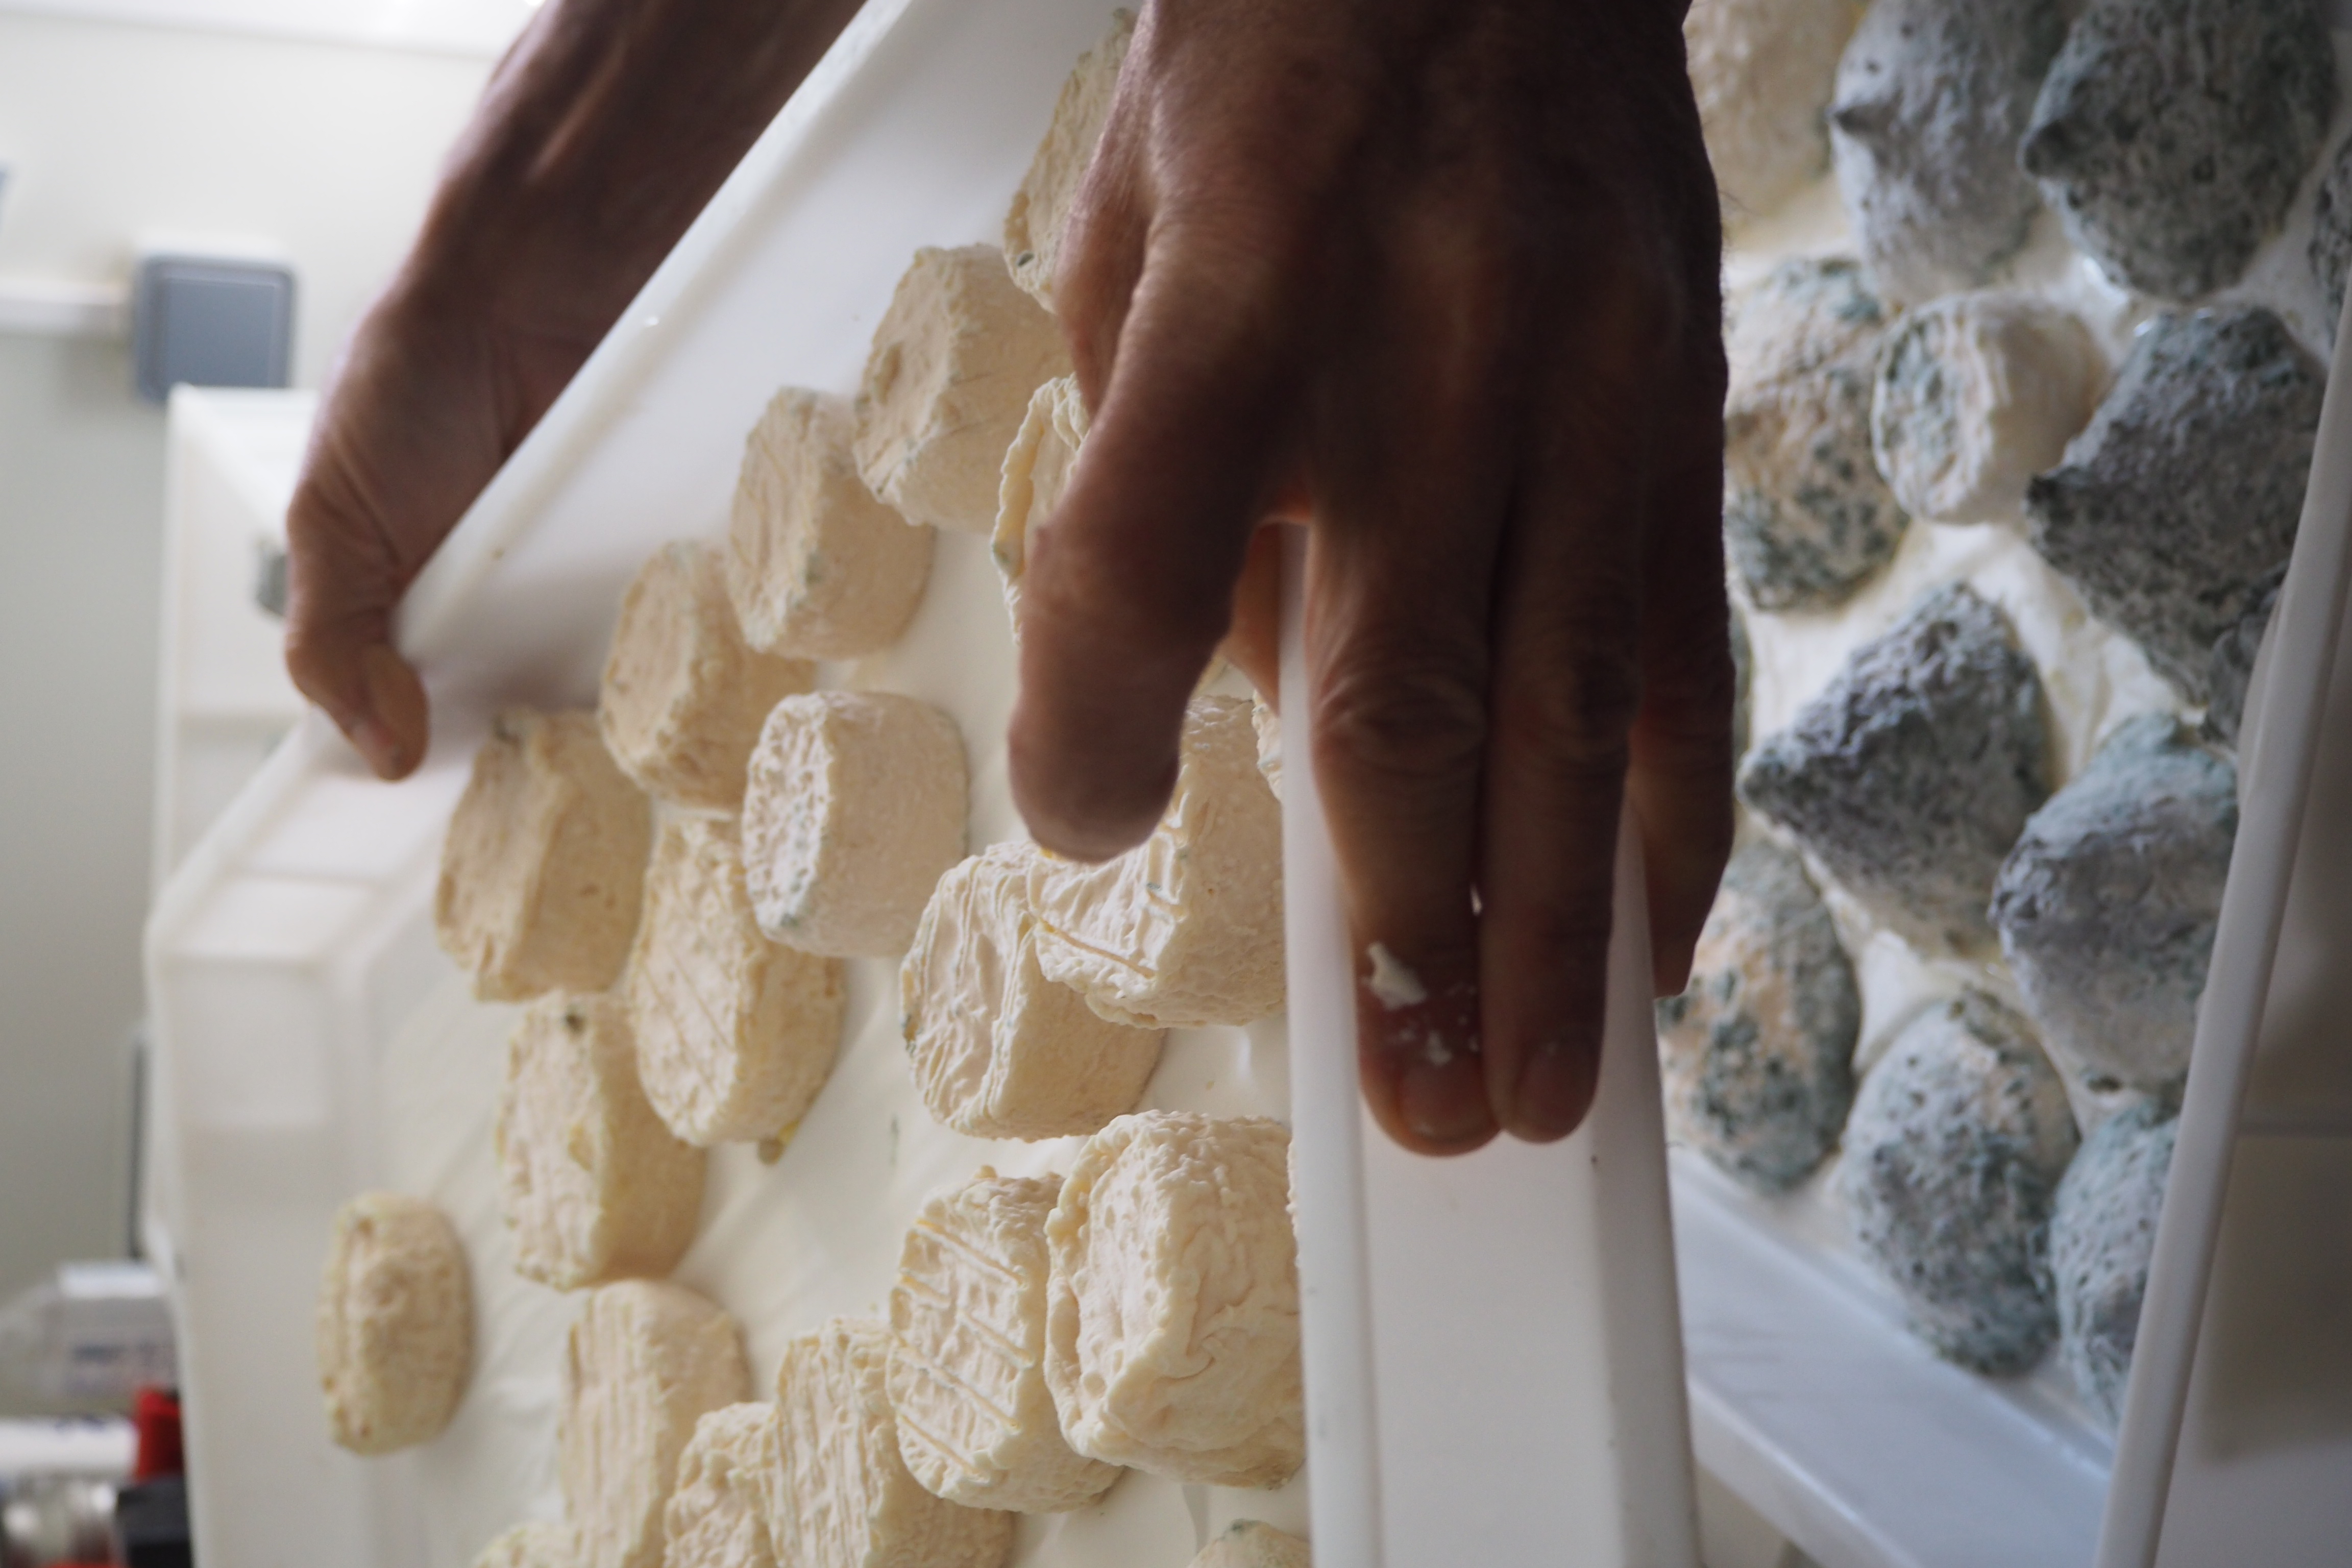 Les fromages de la fermette de la Croix d'Estrine, Martigues - © Otmartigues / EstelleB